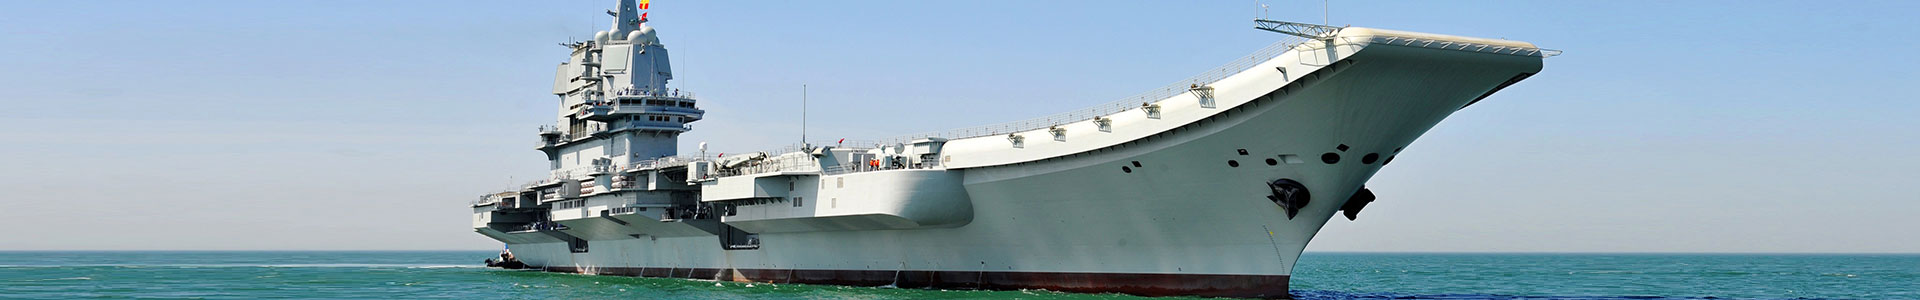 综合工作试验船-大型装备-葫芦岛鼎晟智能机械有限公司